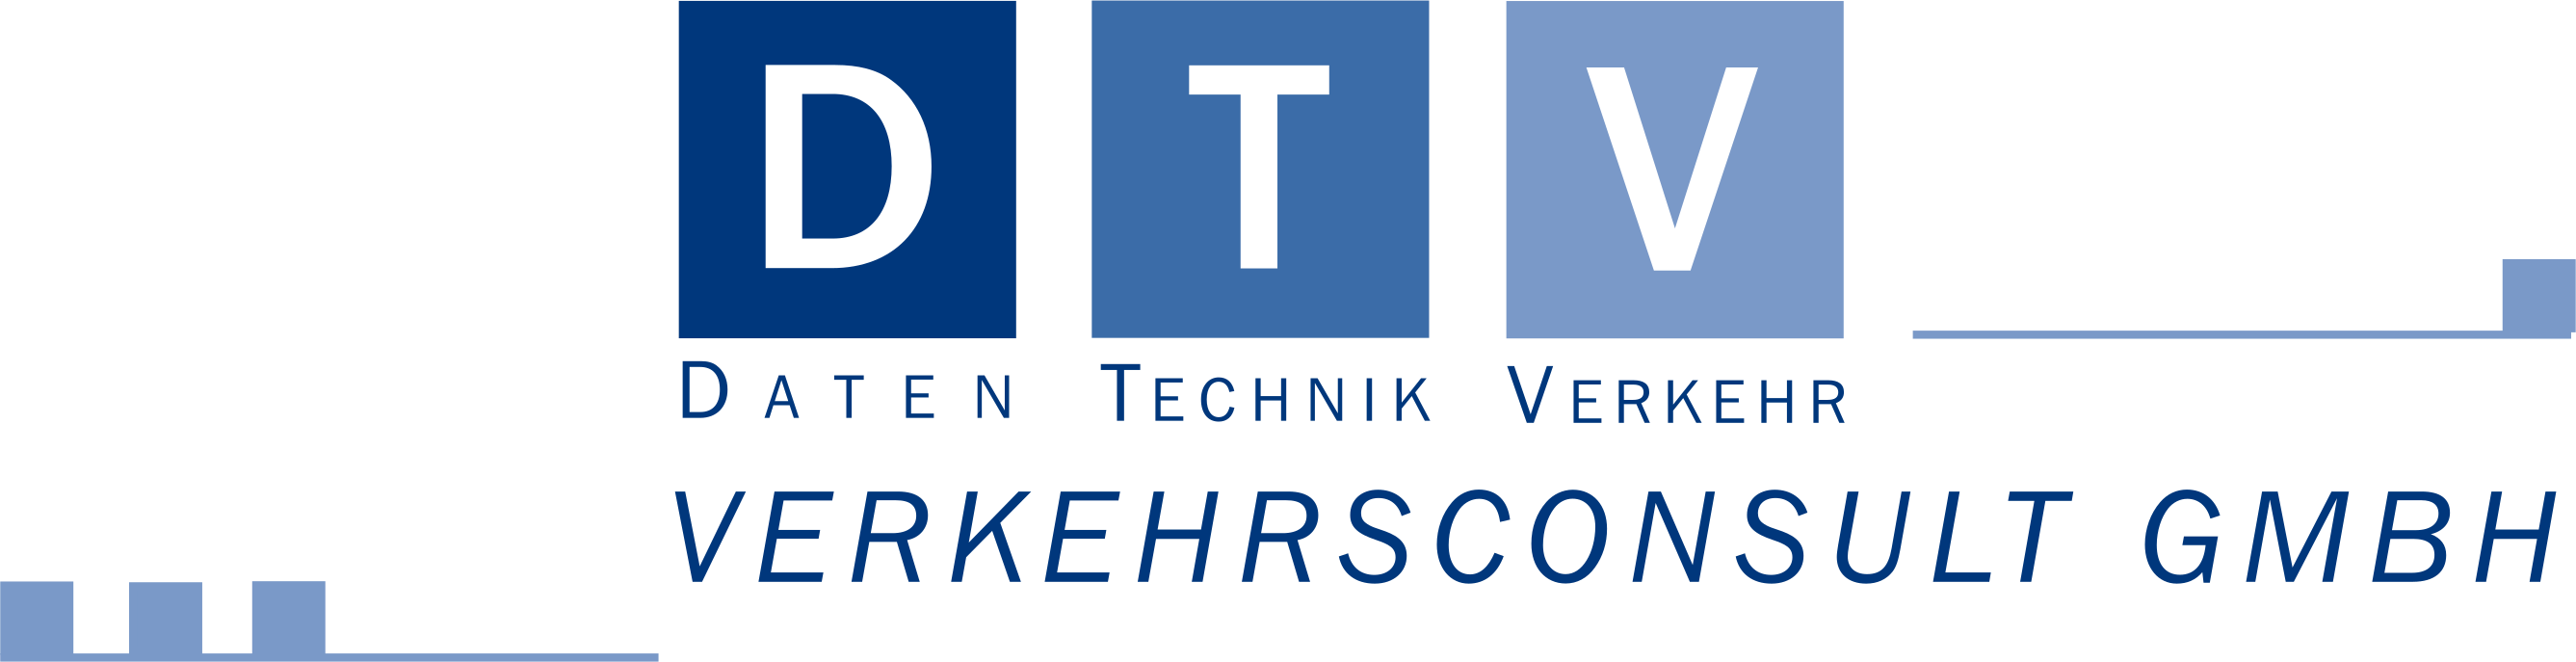 DTV Verkehrsconsult GmbH